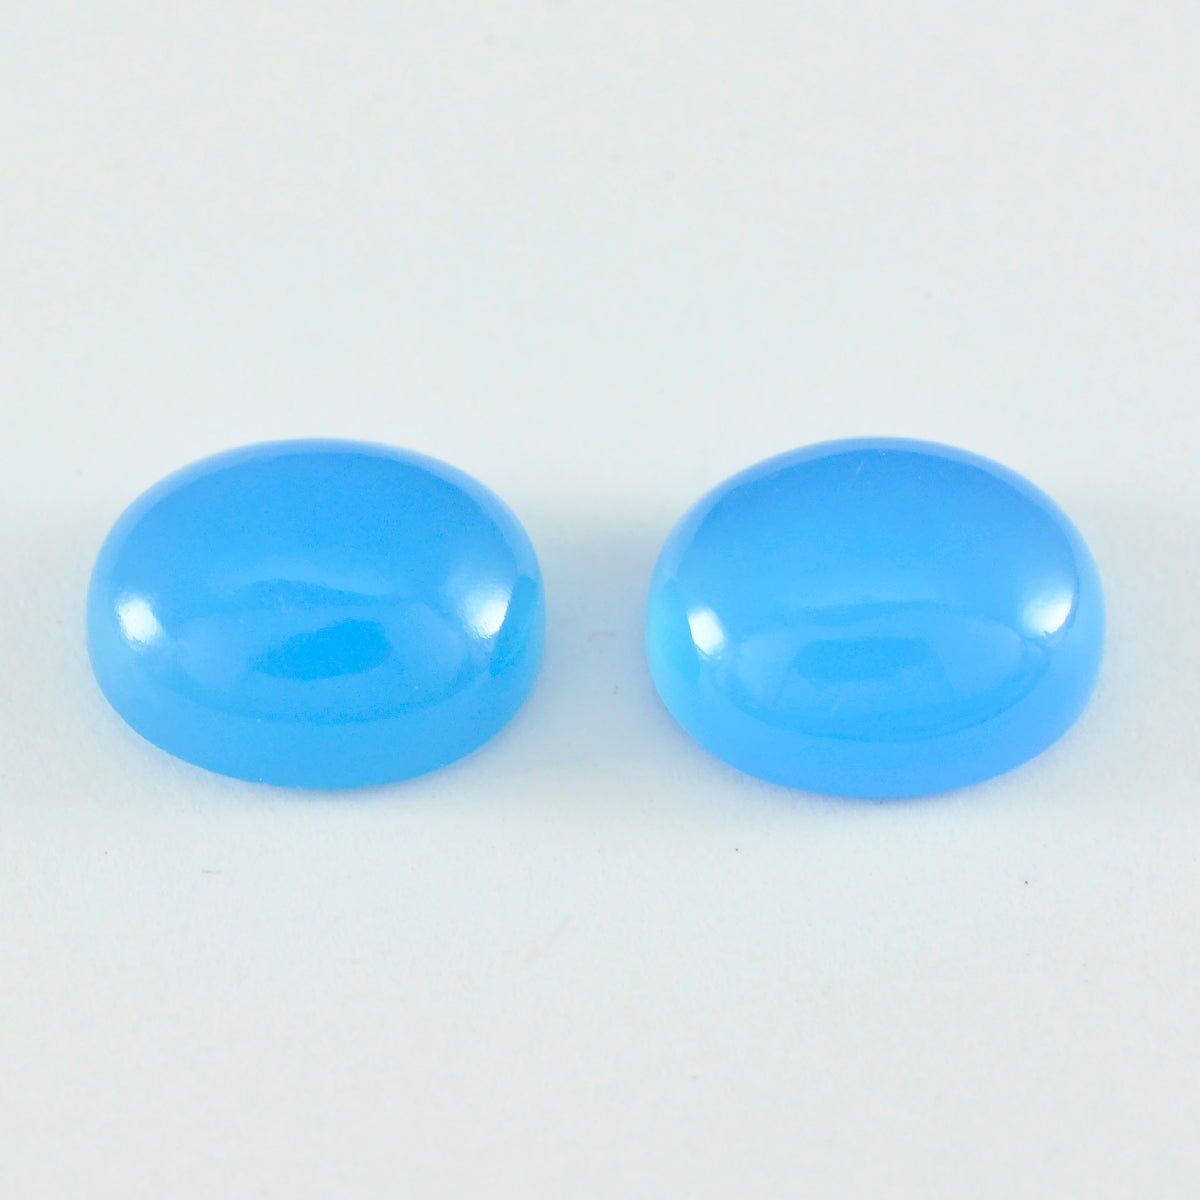 riyogems 1pc cabochon de calcédoine bleue 8x10 mm forme ovale qualité impressionnante pierre précieuse en vrac